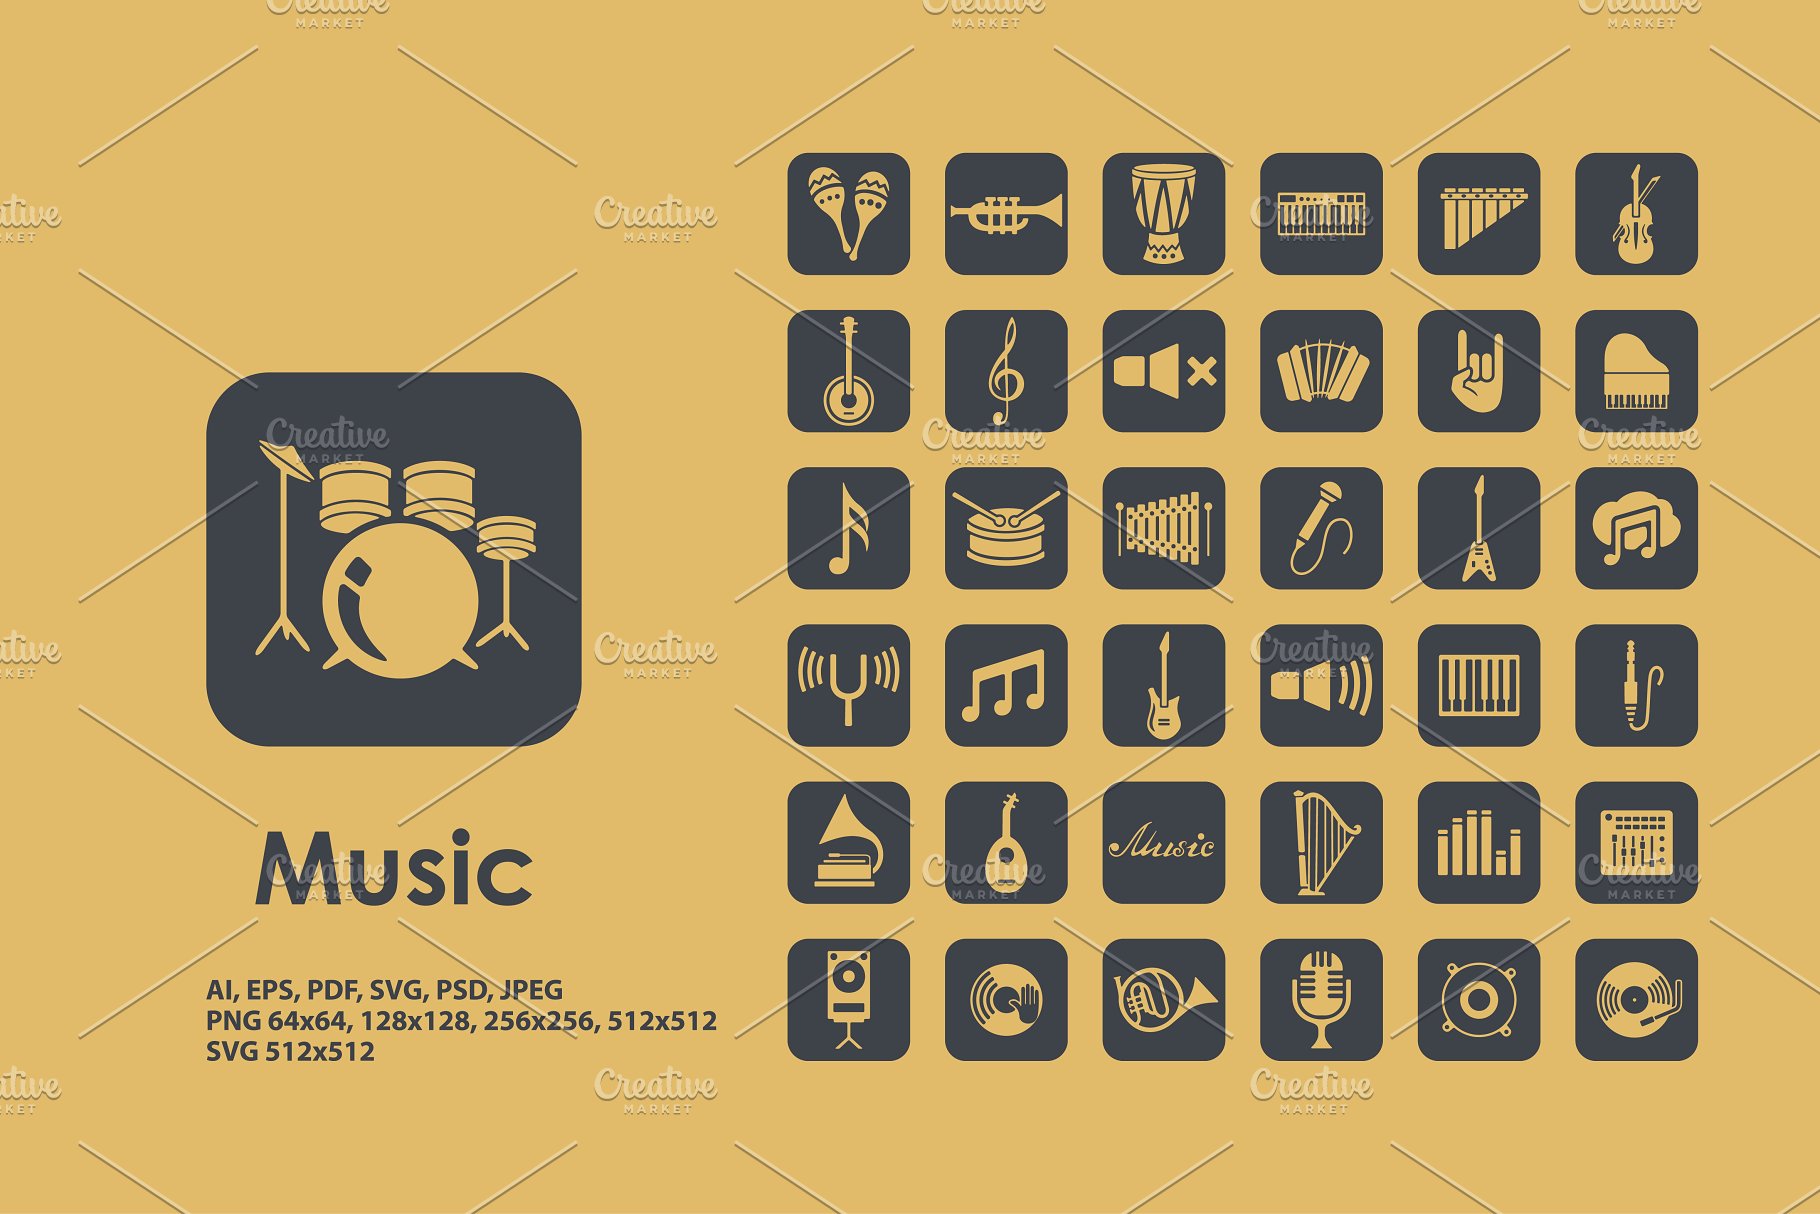 与音乐有关的图标 Music icons #91985